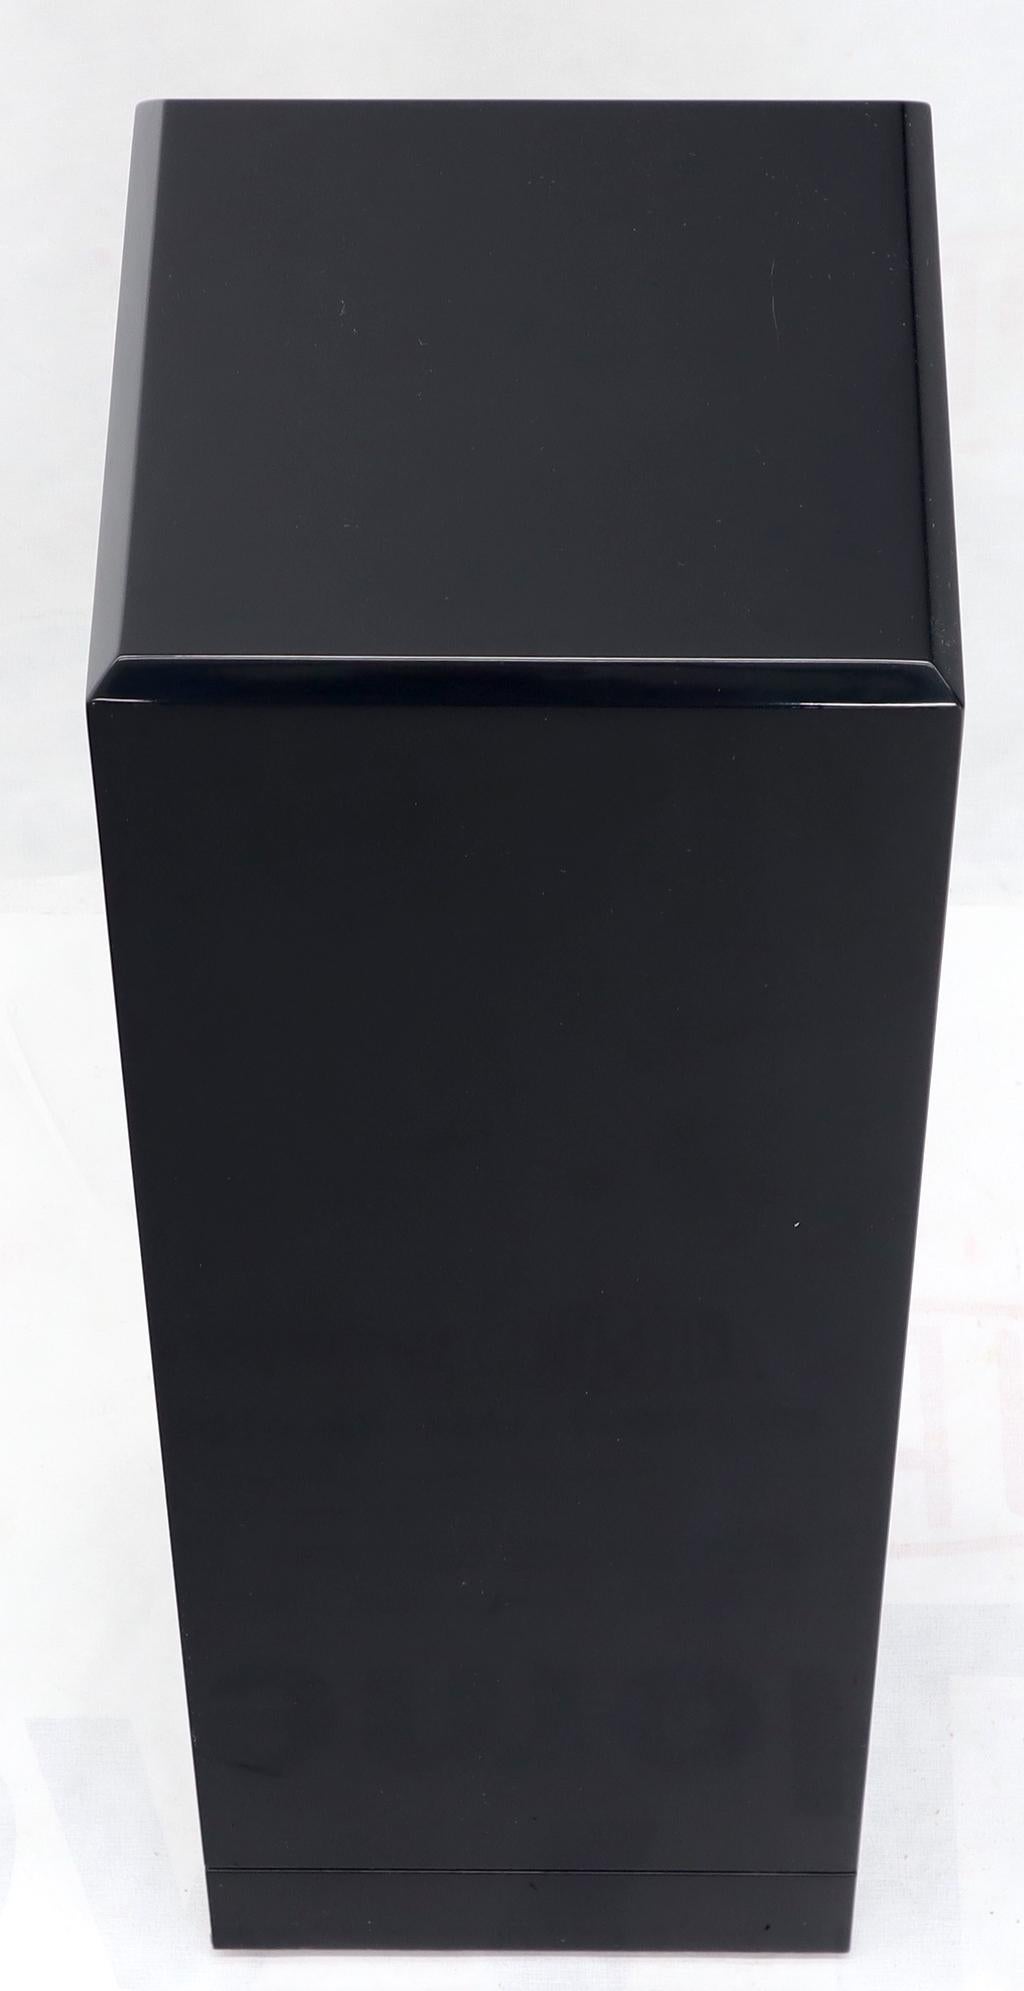 tall black pedestal stand